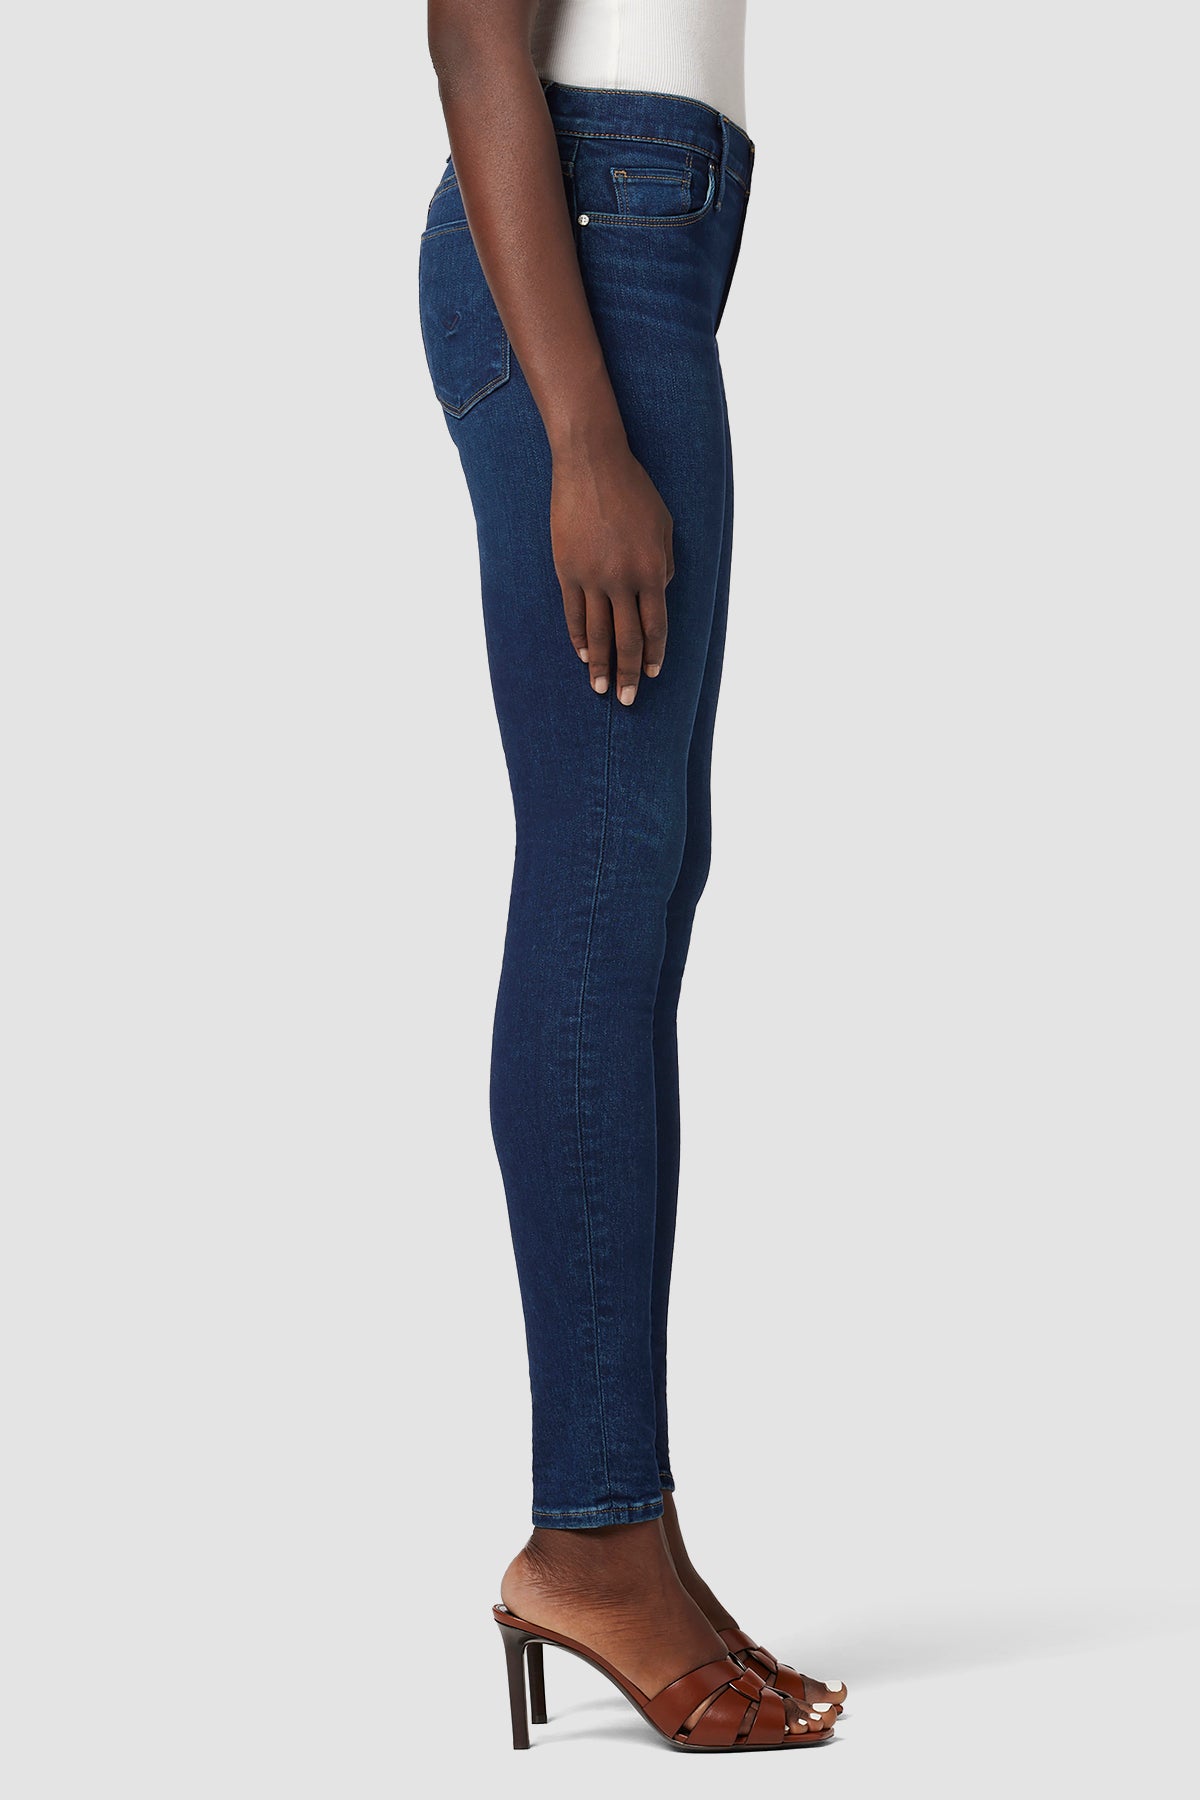 NWT J BRANDMaria high-rise skinny leg jeans size 25